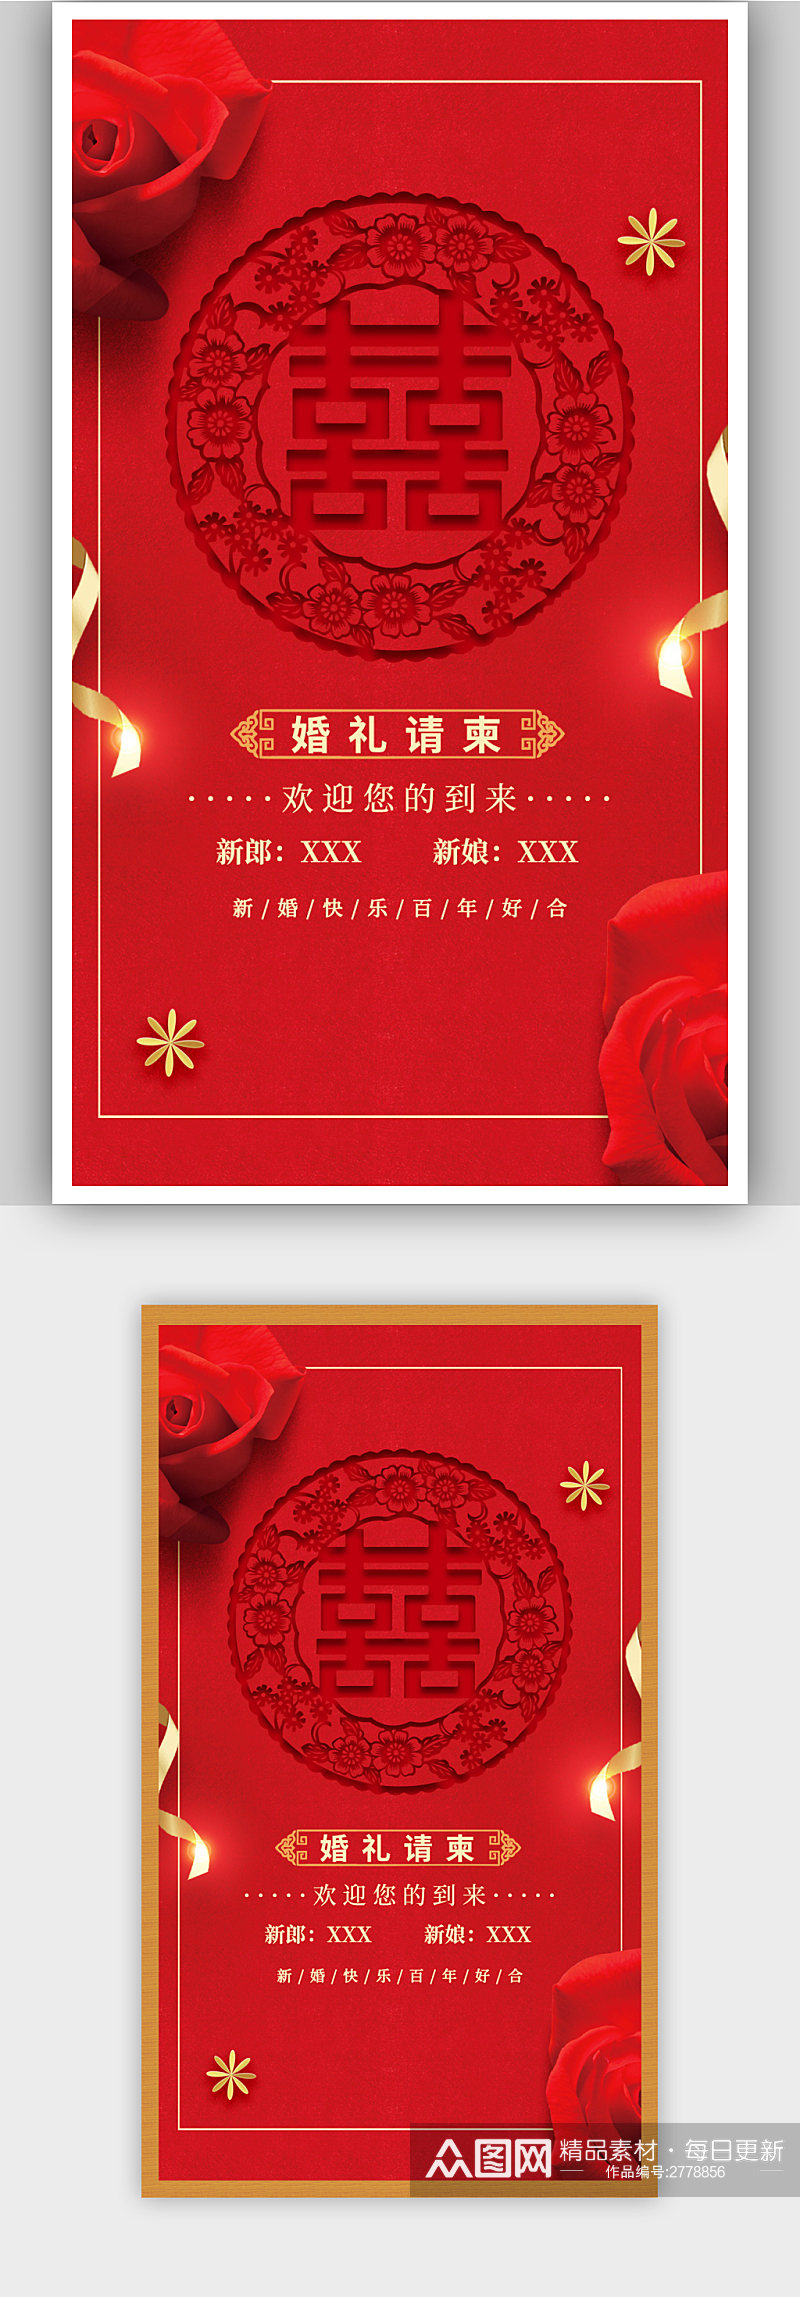 红色中式婚礼邀请函宣传海报素材